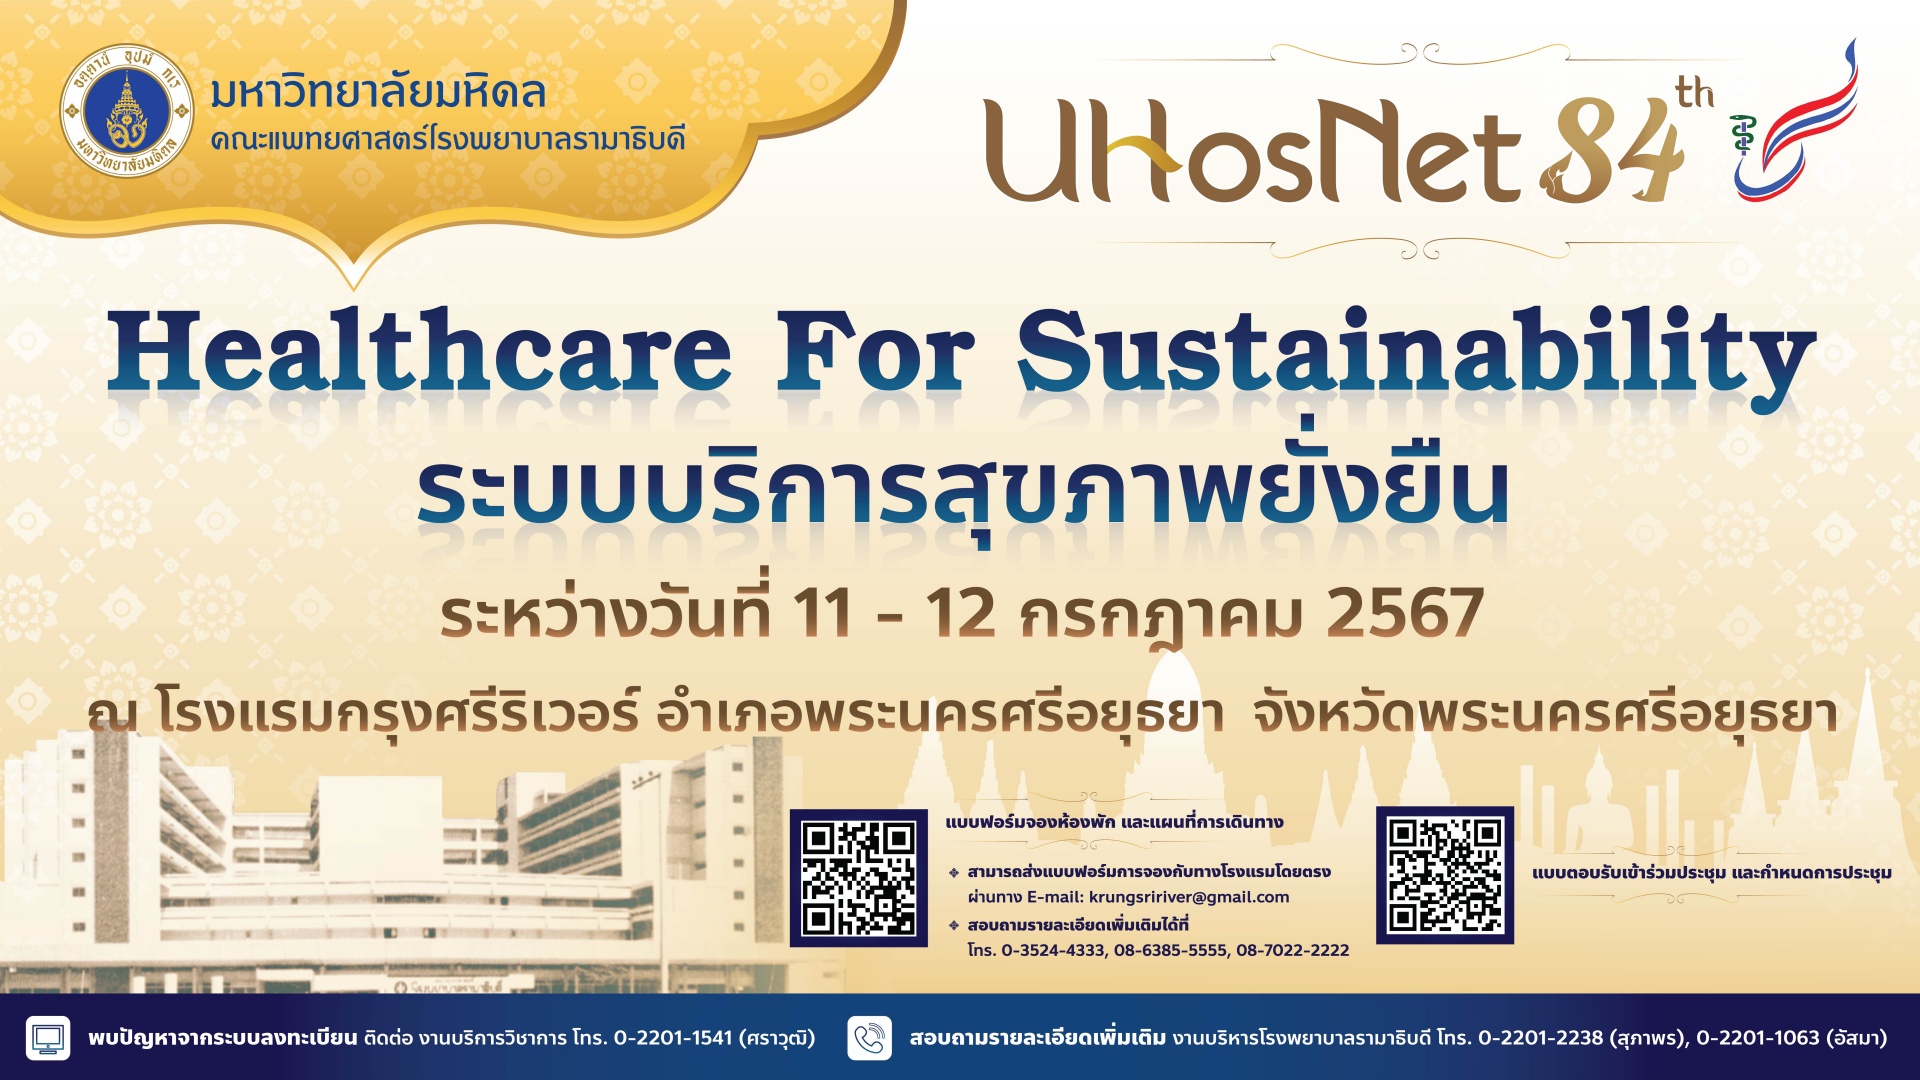 การประชุมเครือข่ายโรงพยาบาล กลุ่มสถาบันแพทยศาสตร์แห่งประเทศไทย ครั้งที่ 84 (UHosNet 84th)